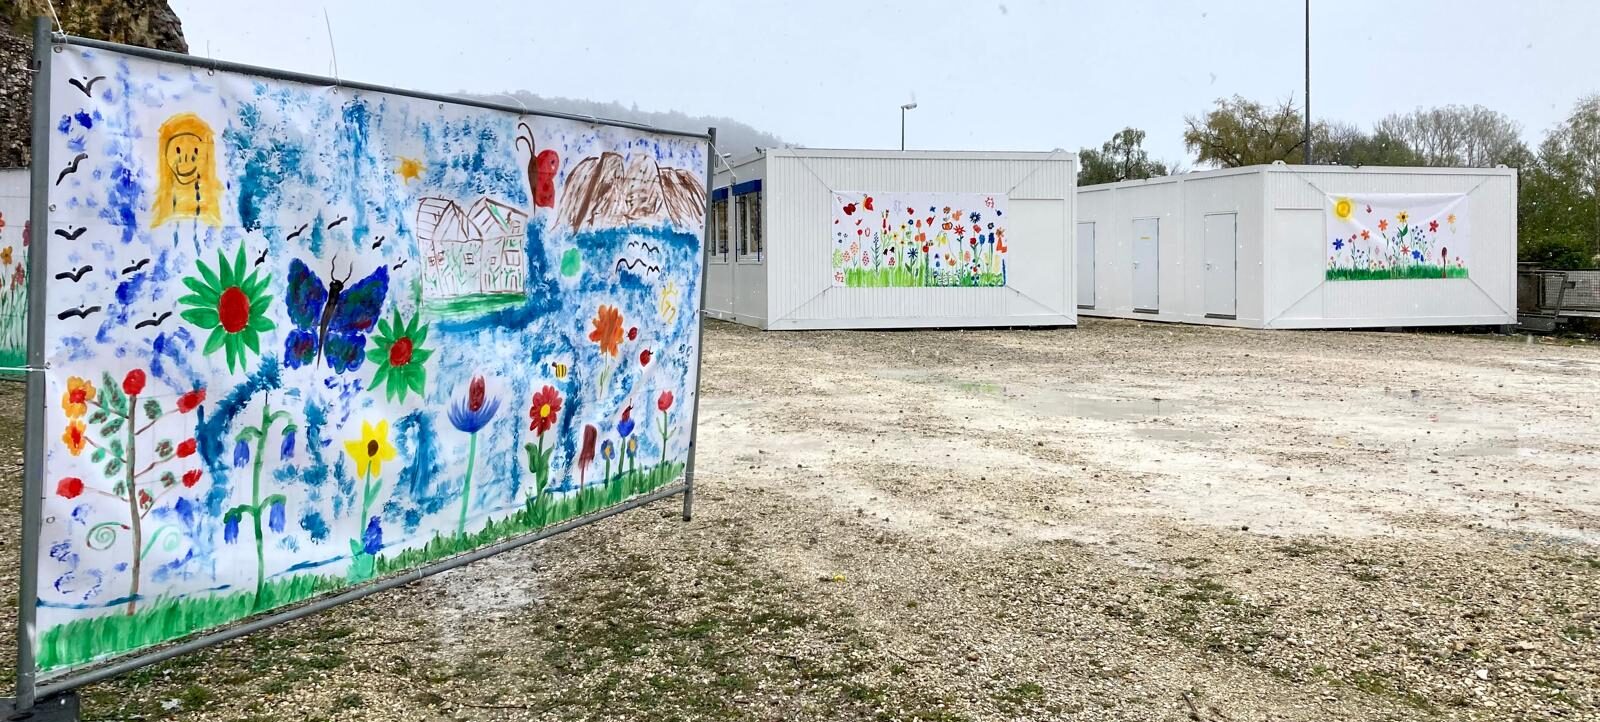 Außenansicht von Containerwohnungen zur Unterbringung Geflüchteter, mit von Kindern gestalteten Plakaten verschönert